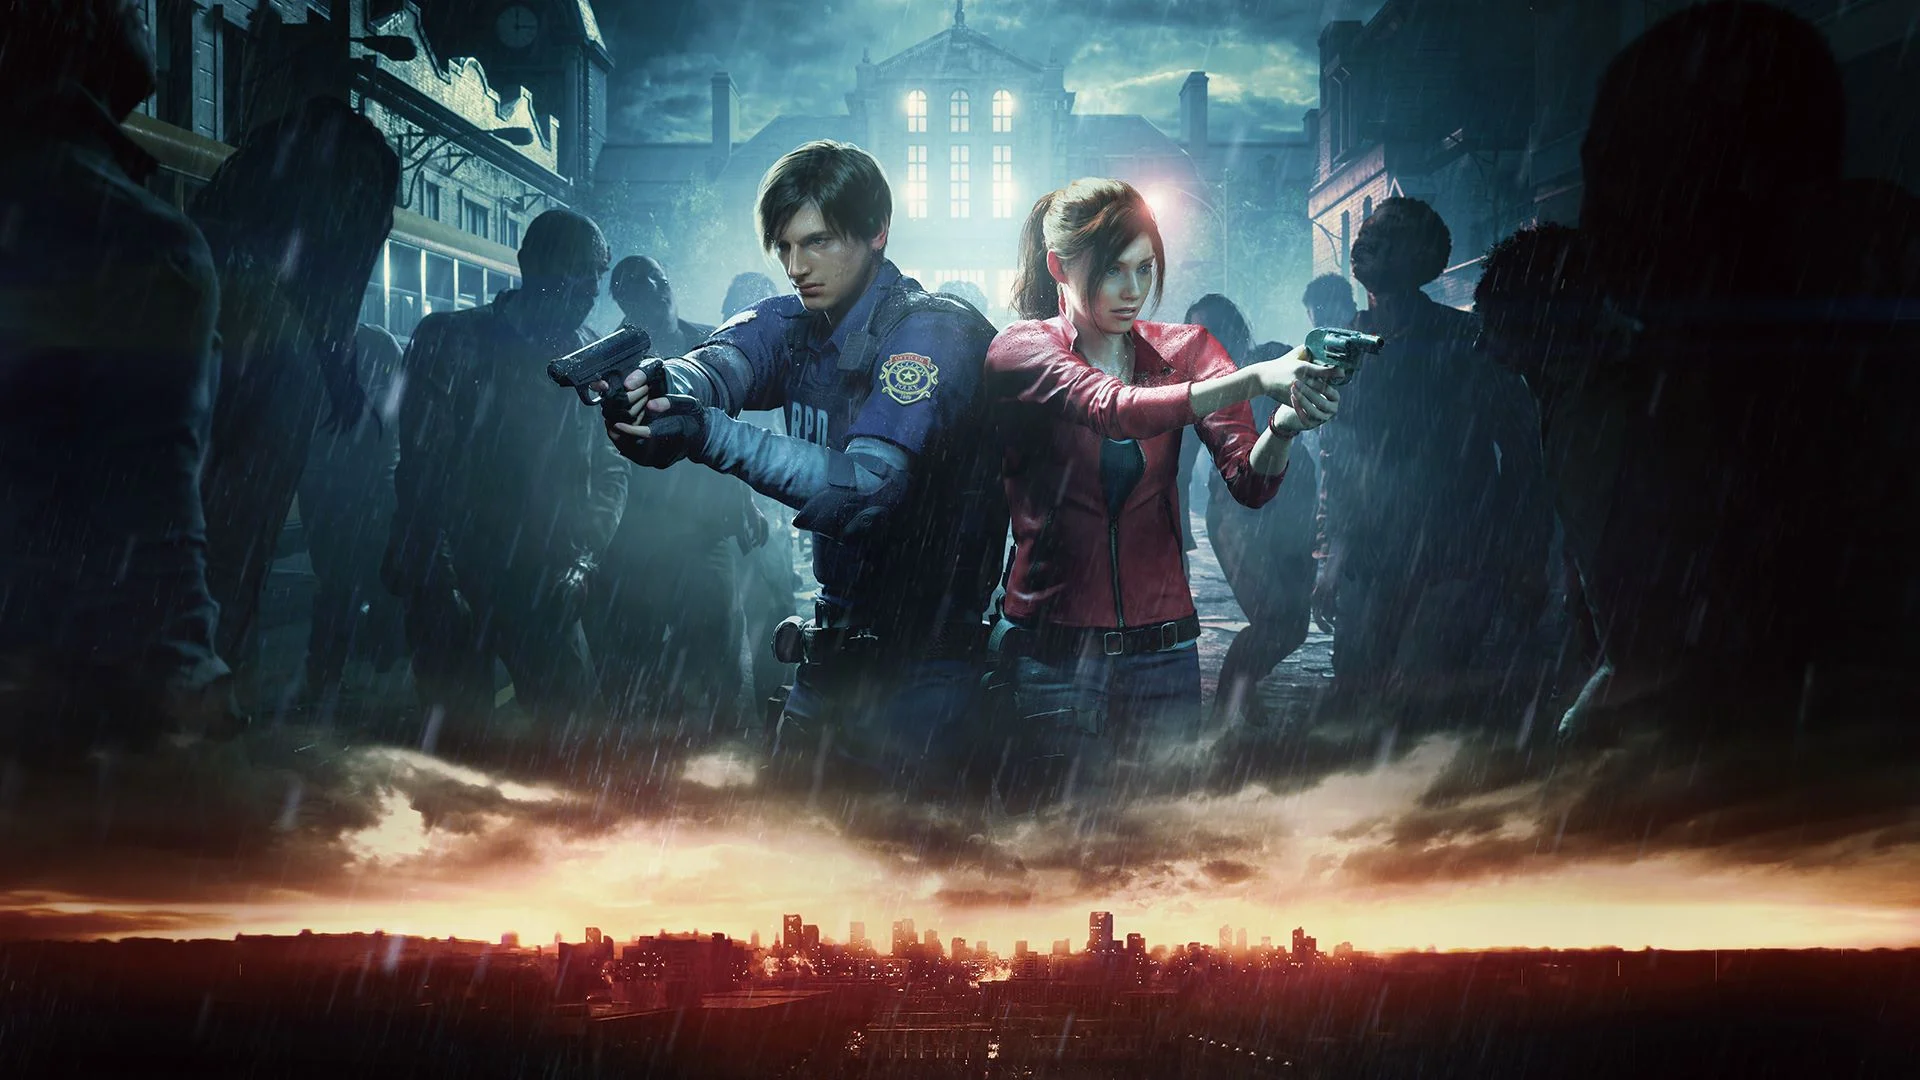 21 мая на Switch вышли Resident Evil, Resident Evil Zero и Resident Evil 4, и по этому случаю мы запустили на сайте голосование и предложили выбрать лучшую часть серии вам, читателям «Канобу». На момент написания этого материала голоса за любимые игры отдали 1398 человек, и теперь пора подвести итоги.